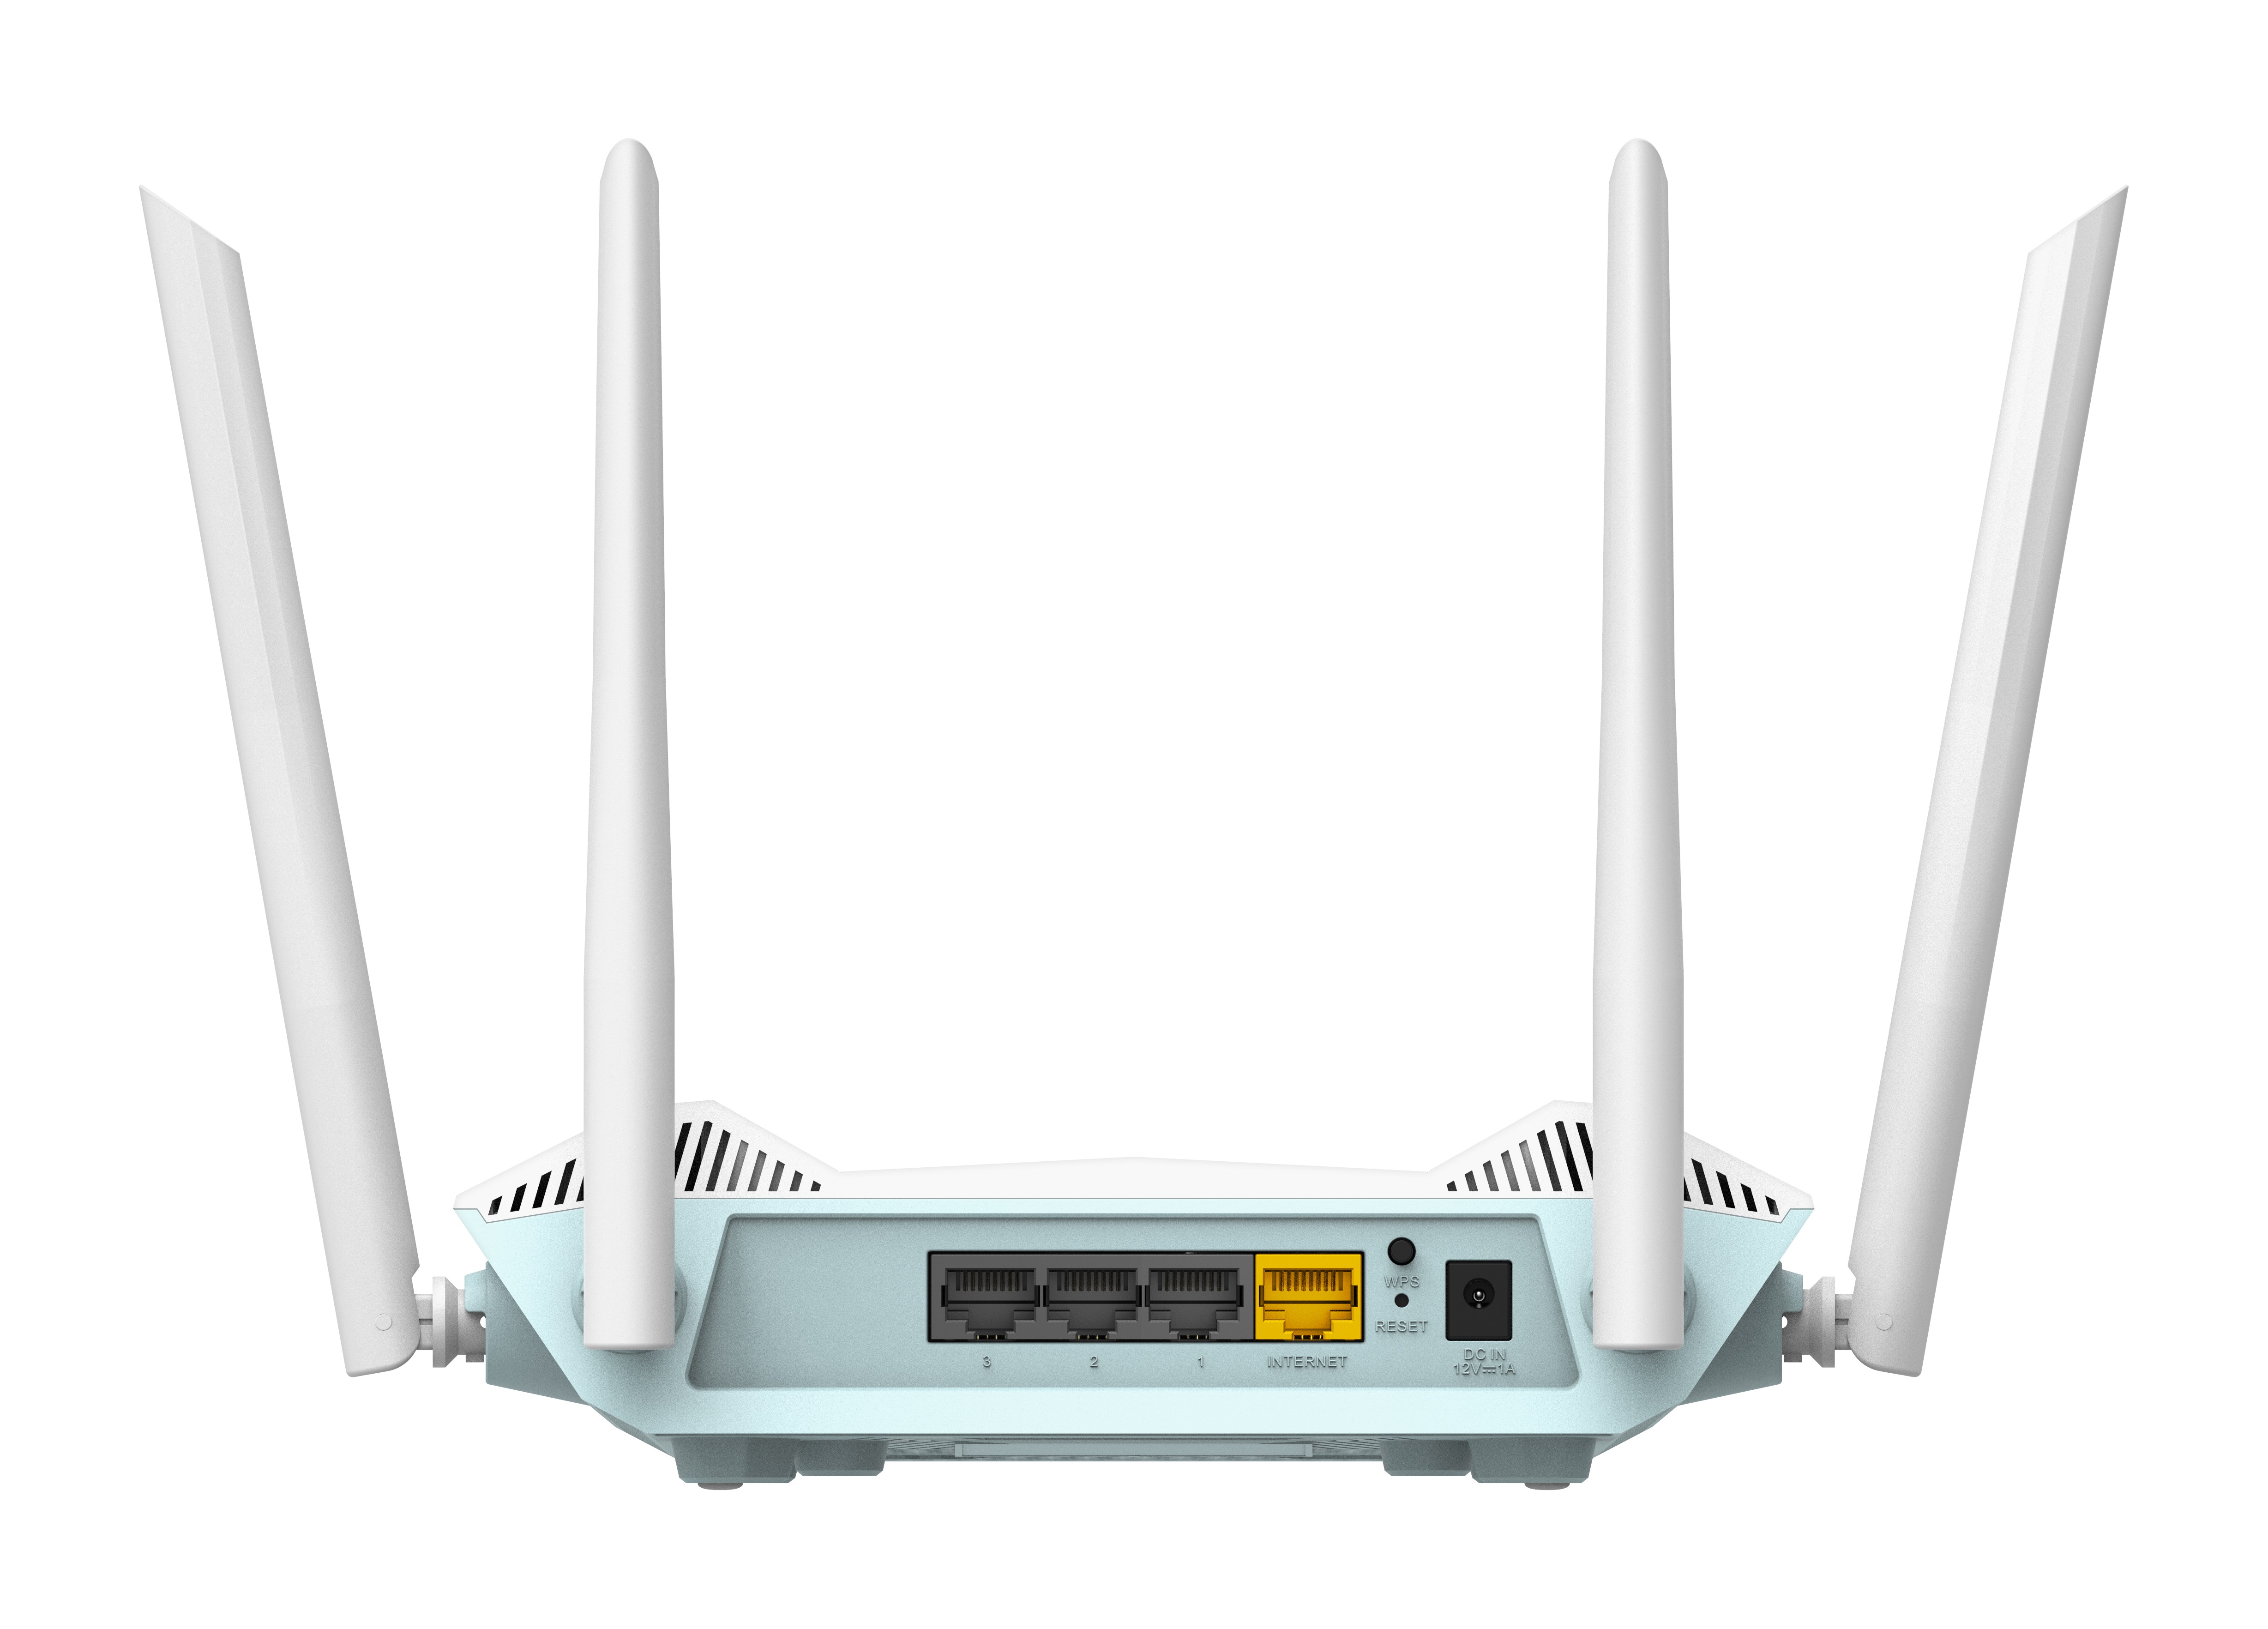 D-Link R15 EAGLE PRE AI AX1500 Smart Router 